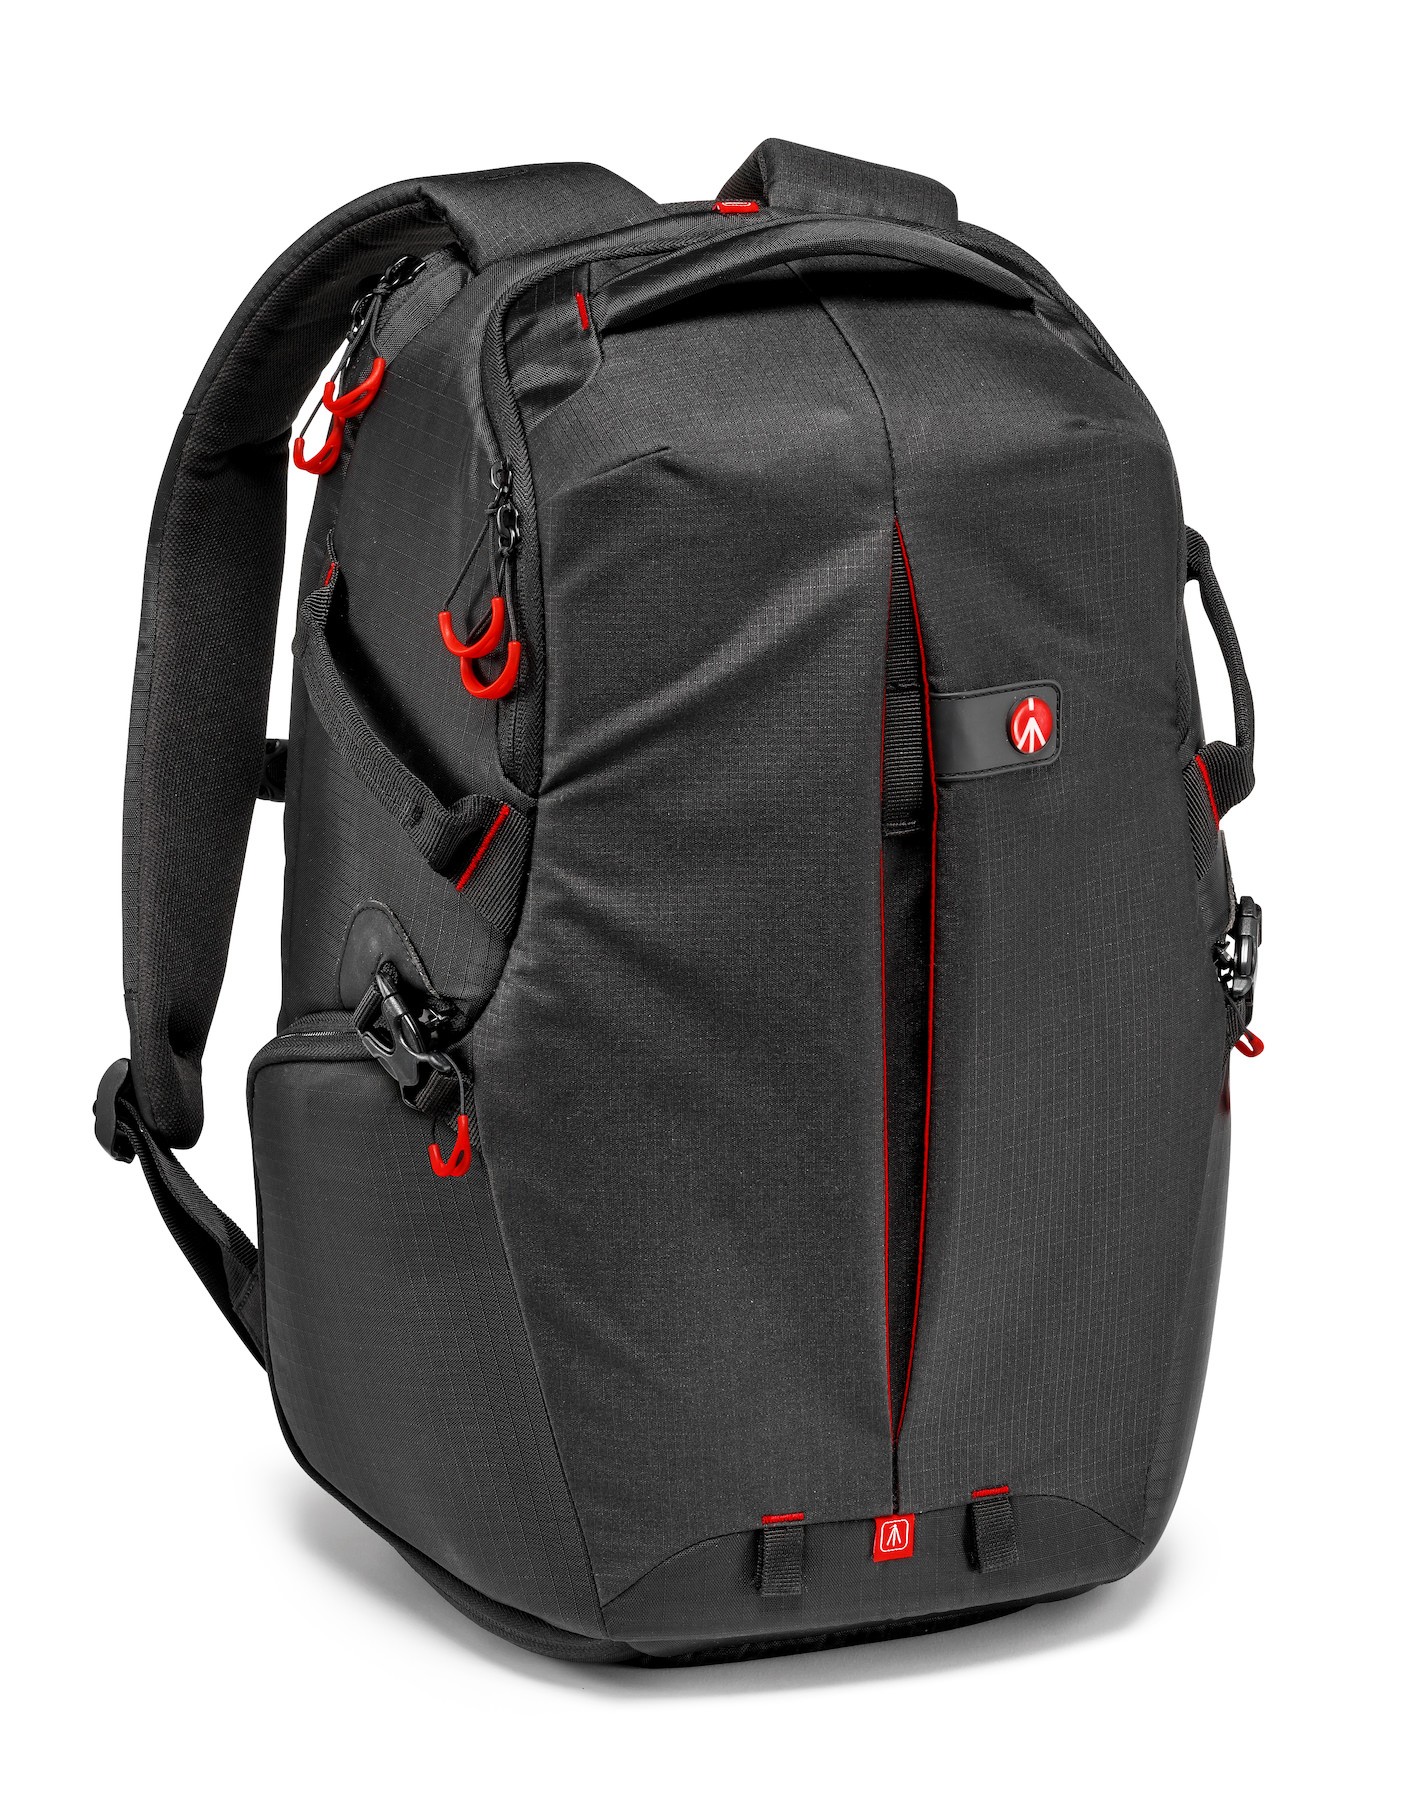 Pro Light camera backpack RedB